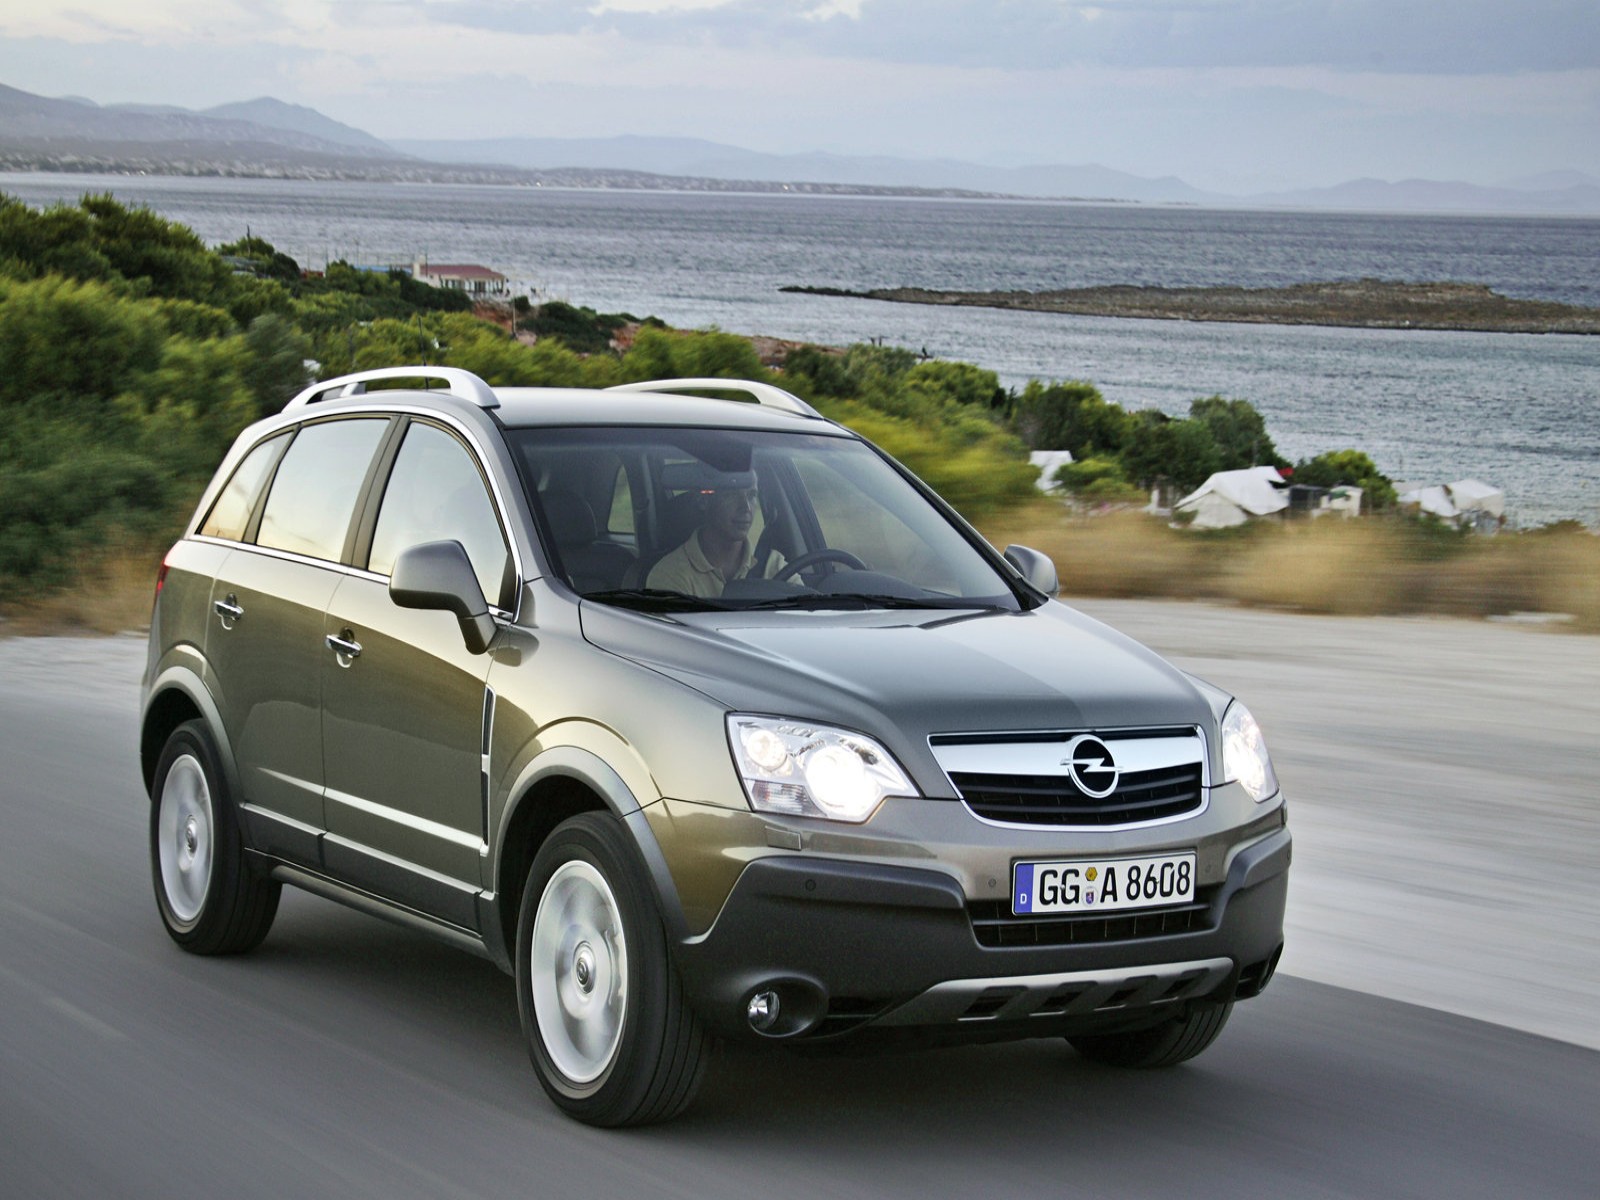 Opel antara купить. Opel Antara 2006. Опель Антара 2006. Opel Antara 2007. Opel Antara 2009.